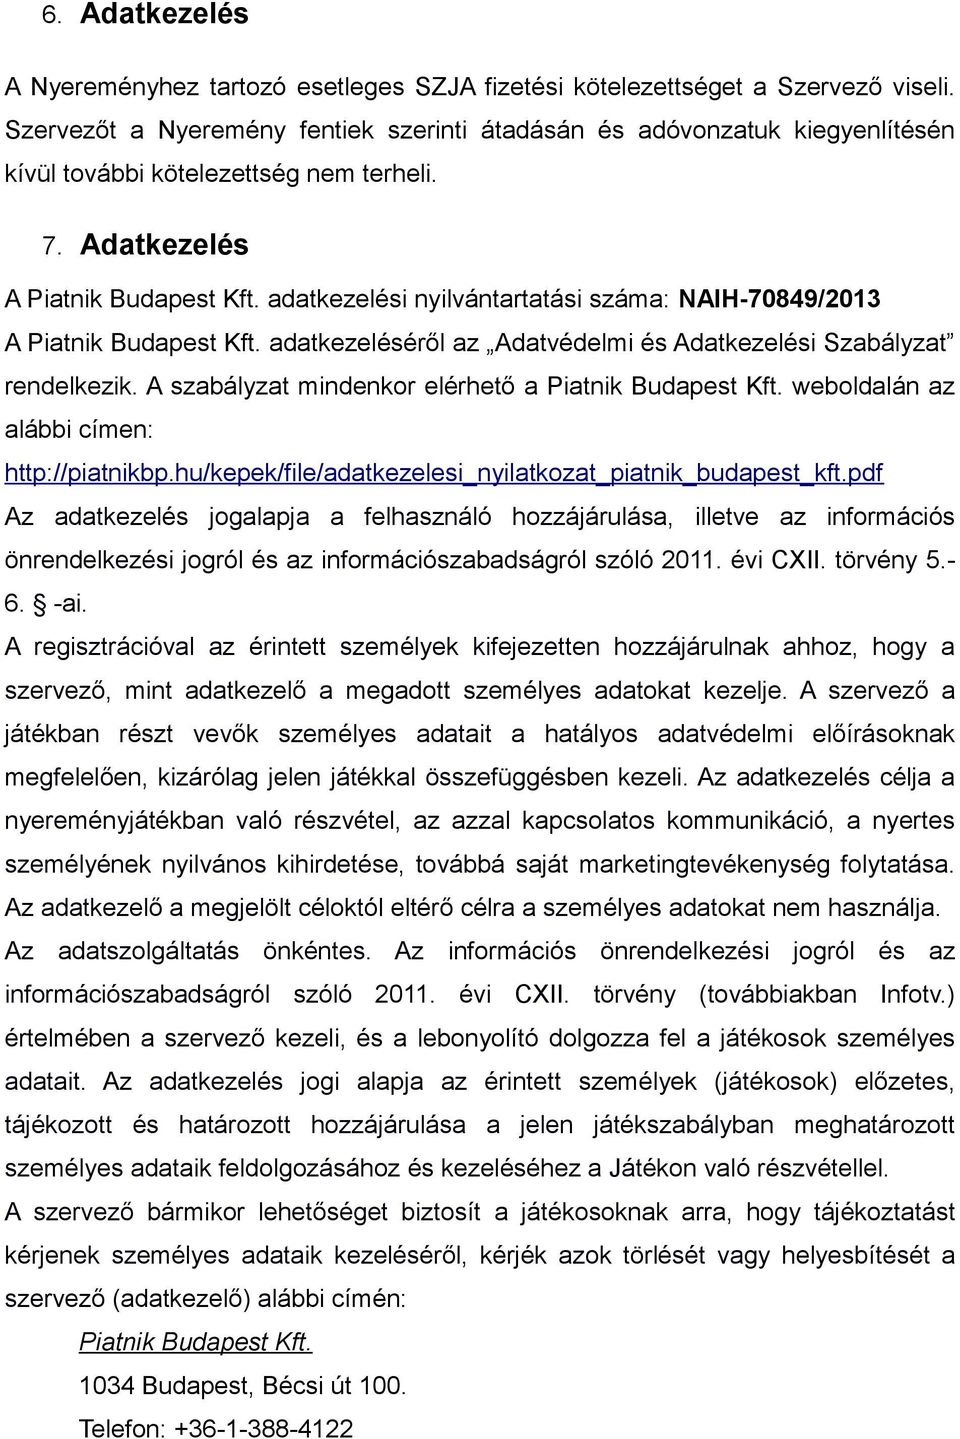 adatkezelési nyilvántartatási száma: NAIH-70849/2013 A Piatnik Budapest Kft. adatkezeléséről az Adatvédelmi és Adatkezelési Szabályzat rendelkezik.